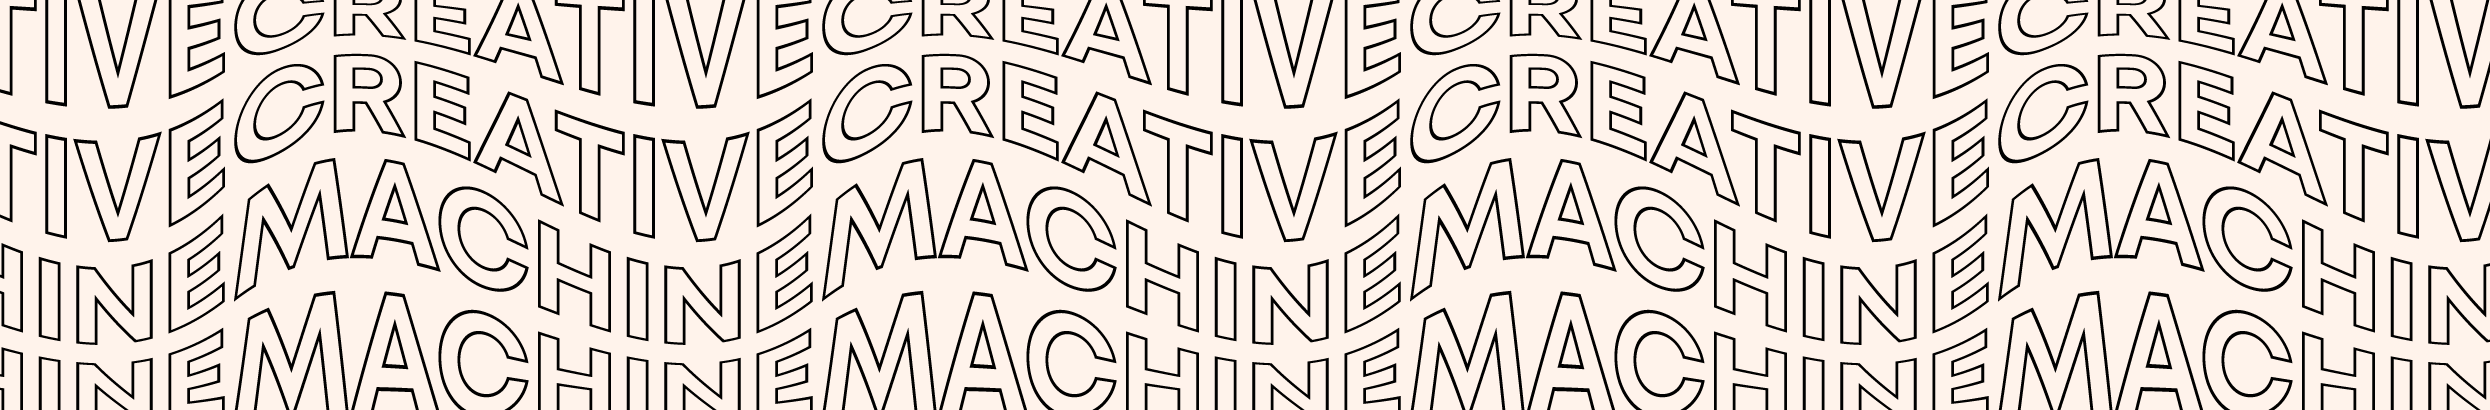 GAX | Creative Studio's profile banner